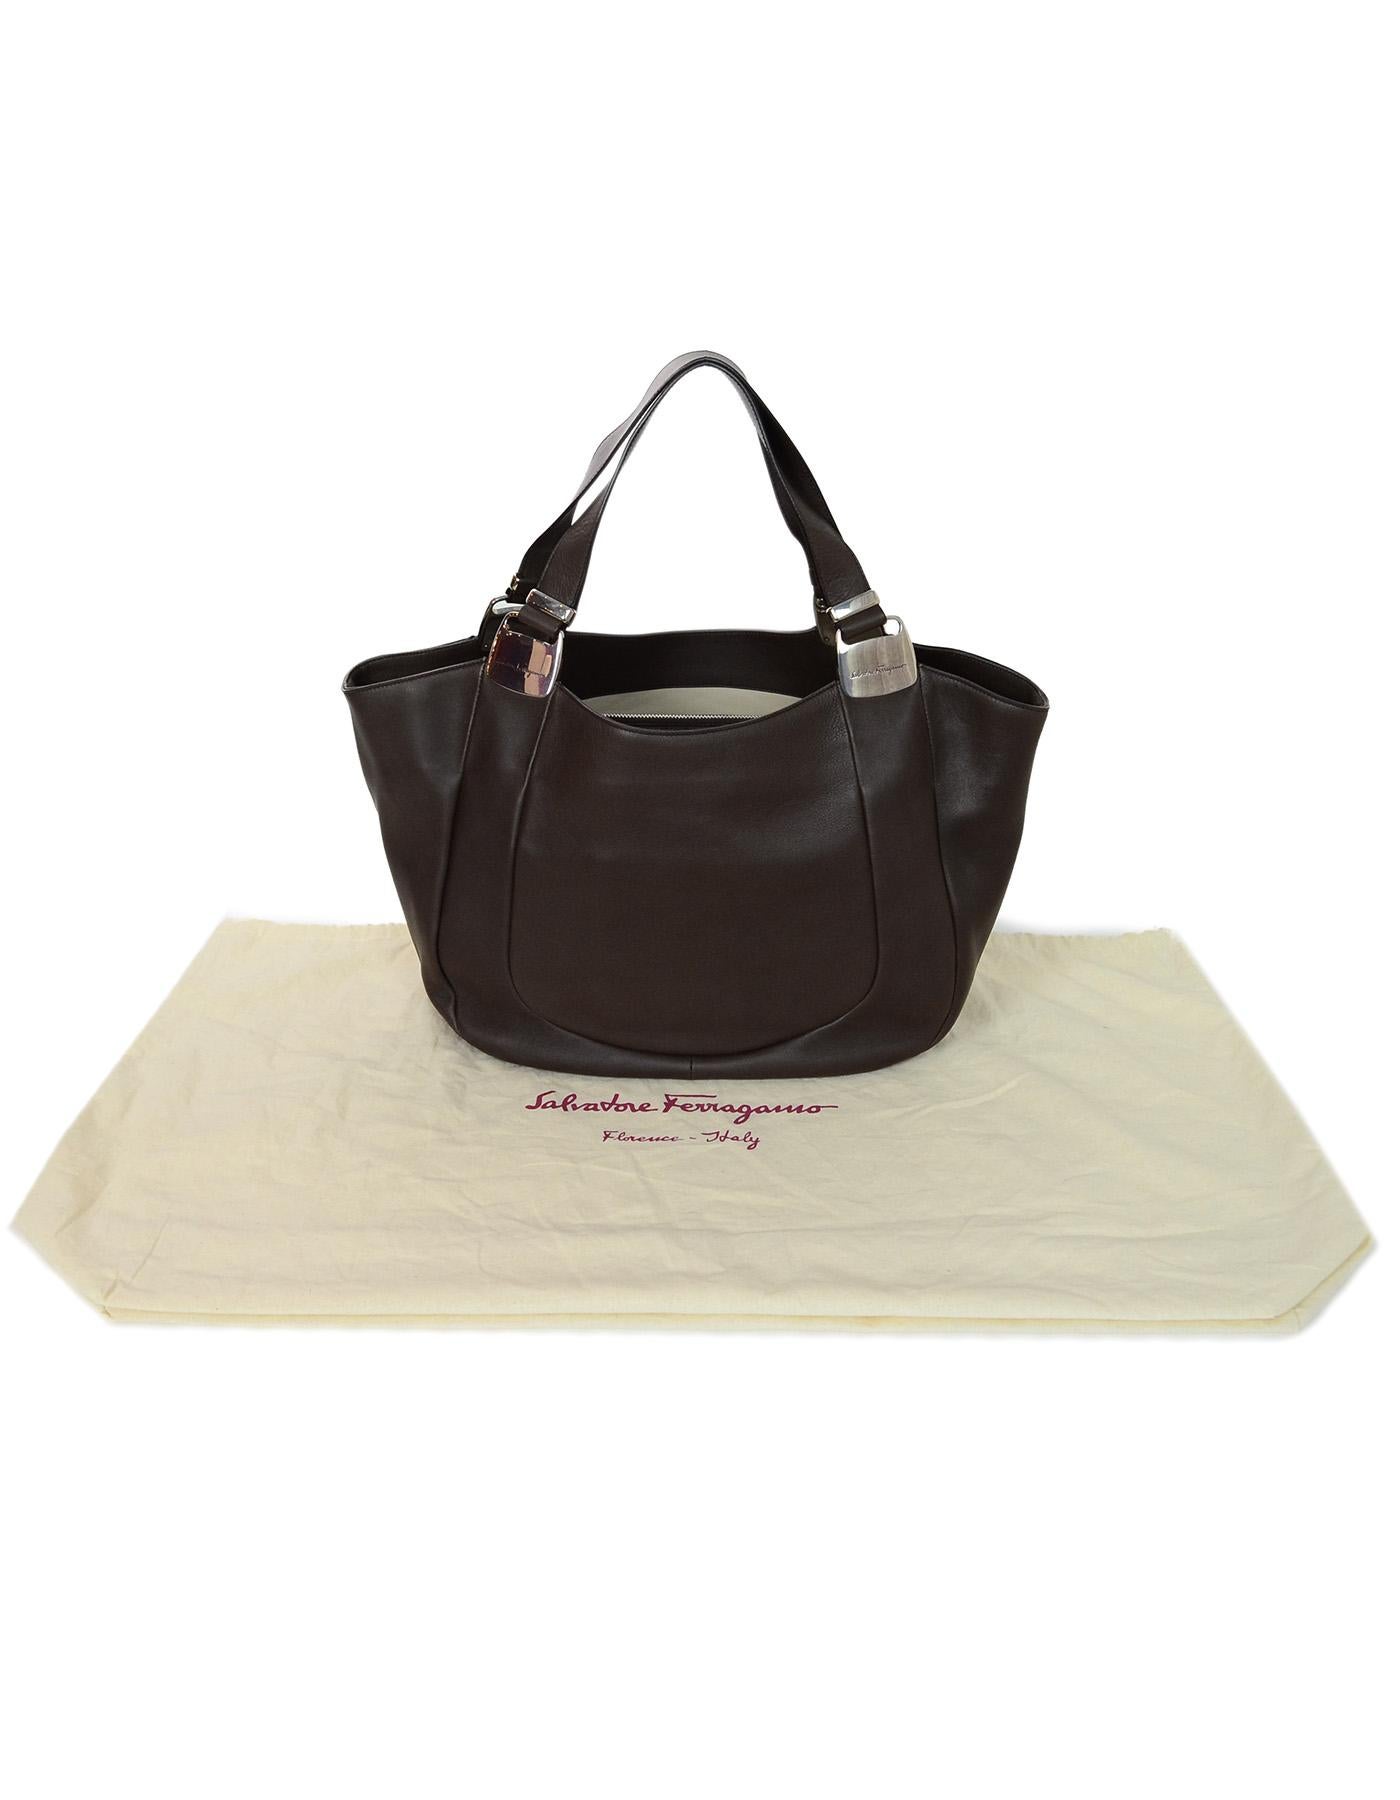 Salvatore Ferragamo Brown Leather Tote Bag 4